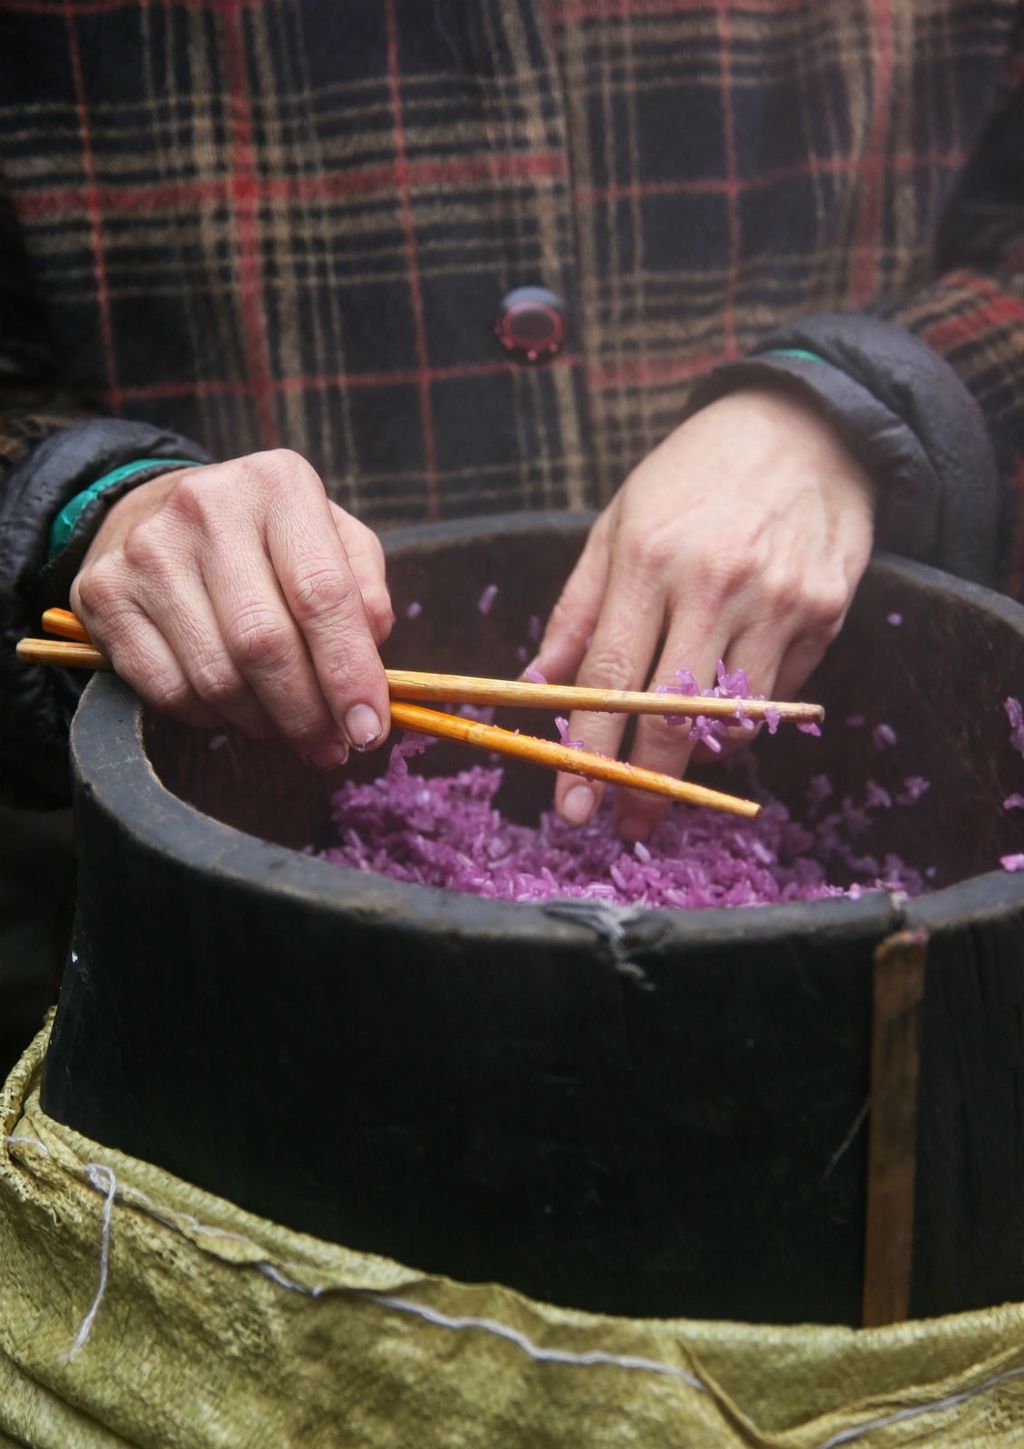 Ljubičasta riža često se koristi u azijskoj kuhinji